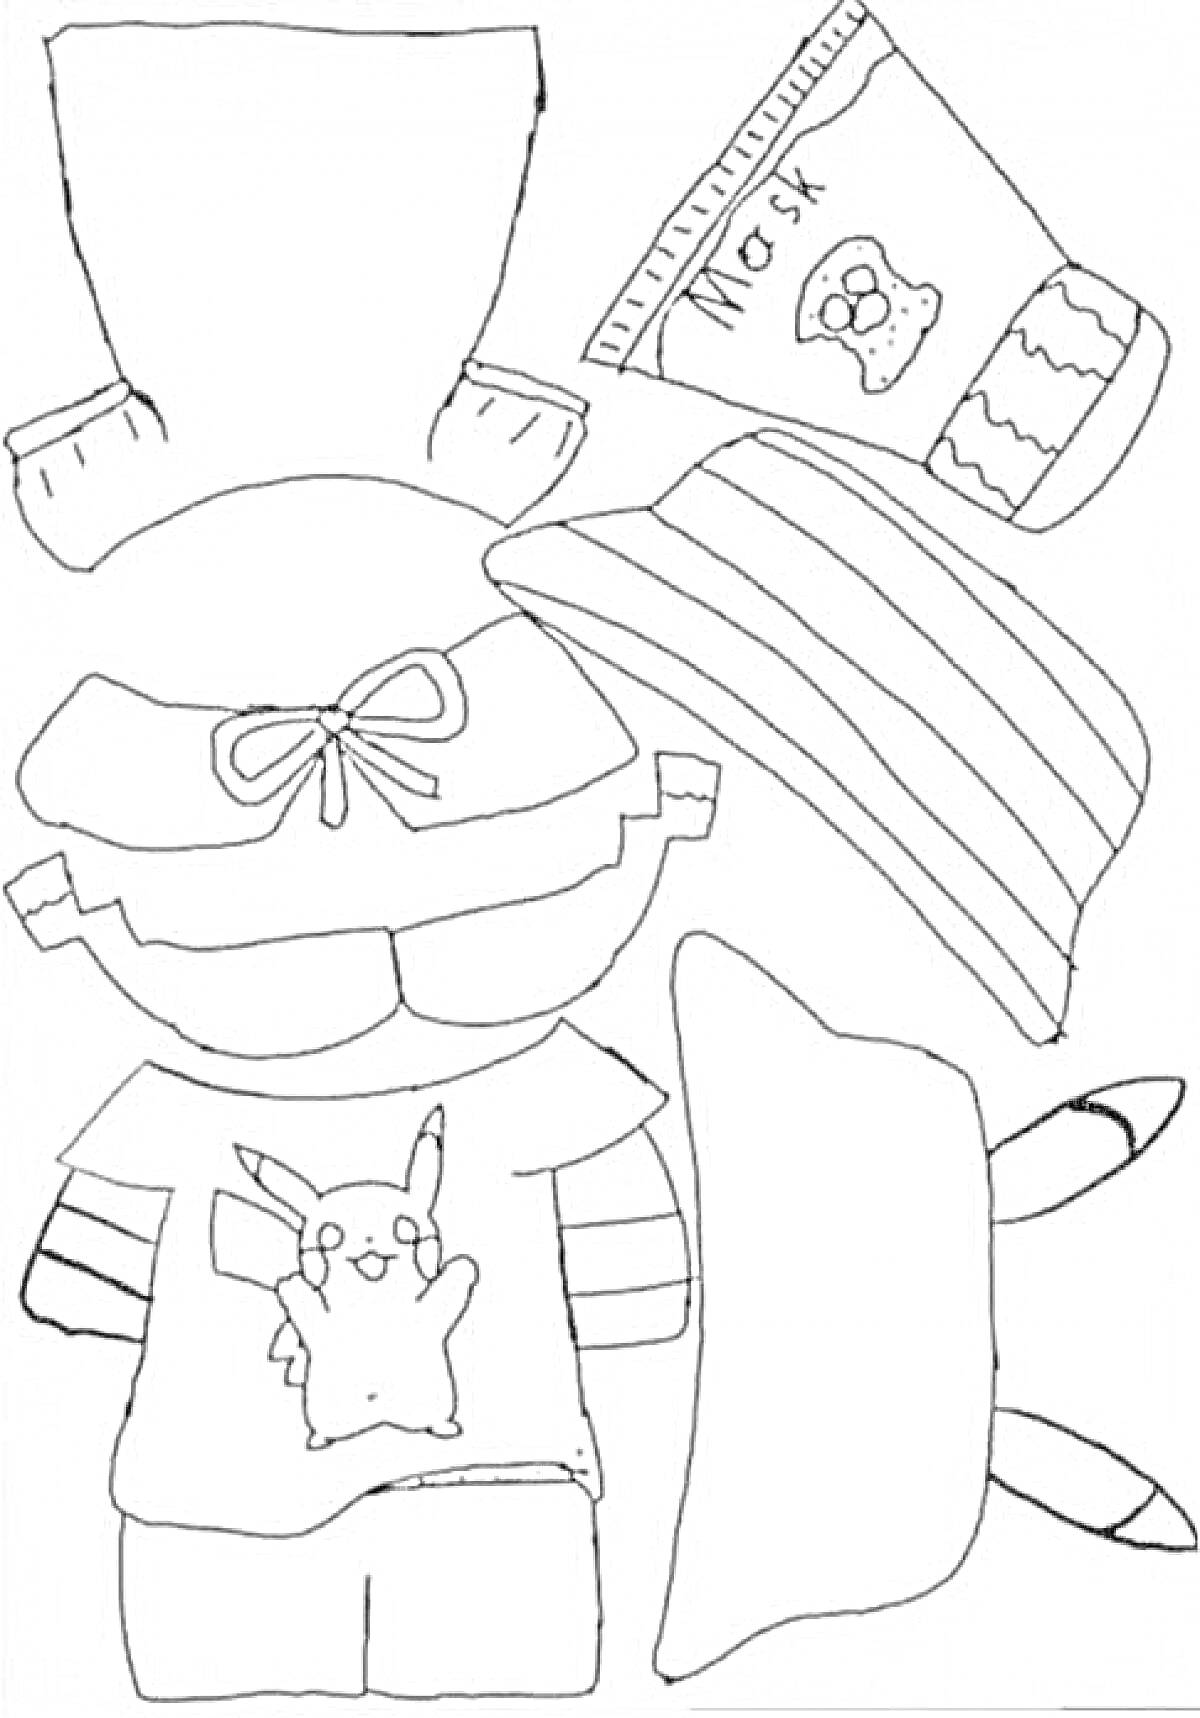 Уточка Лалафанфан с одеждой и едой, в комплекте футболка с изображением Пикачу, шорты, кепка с бантом, полосатый шарф, нарукавники, пачка сока, и две конфеты.